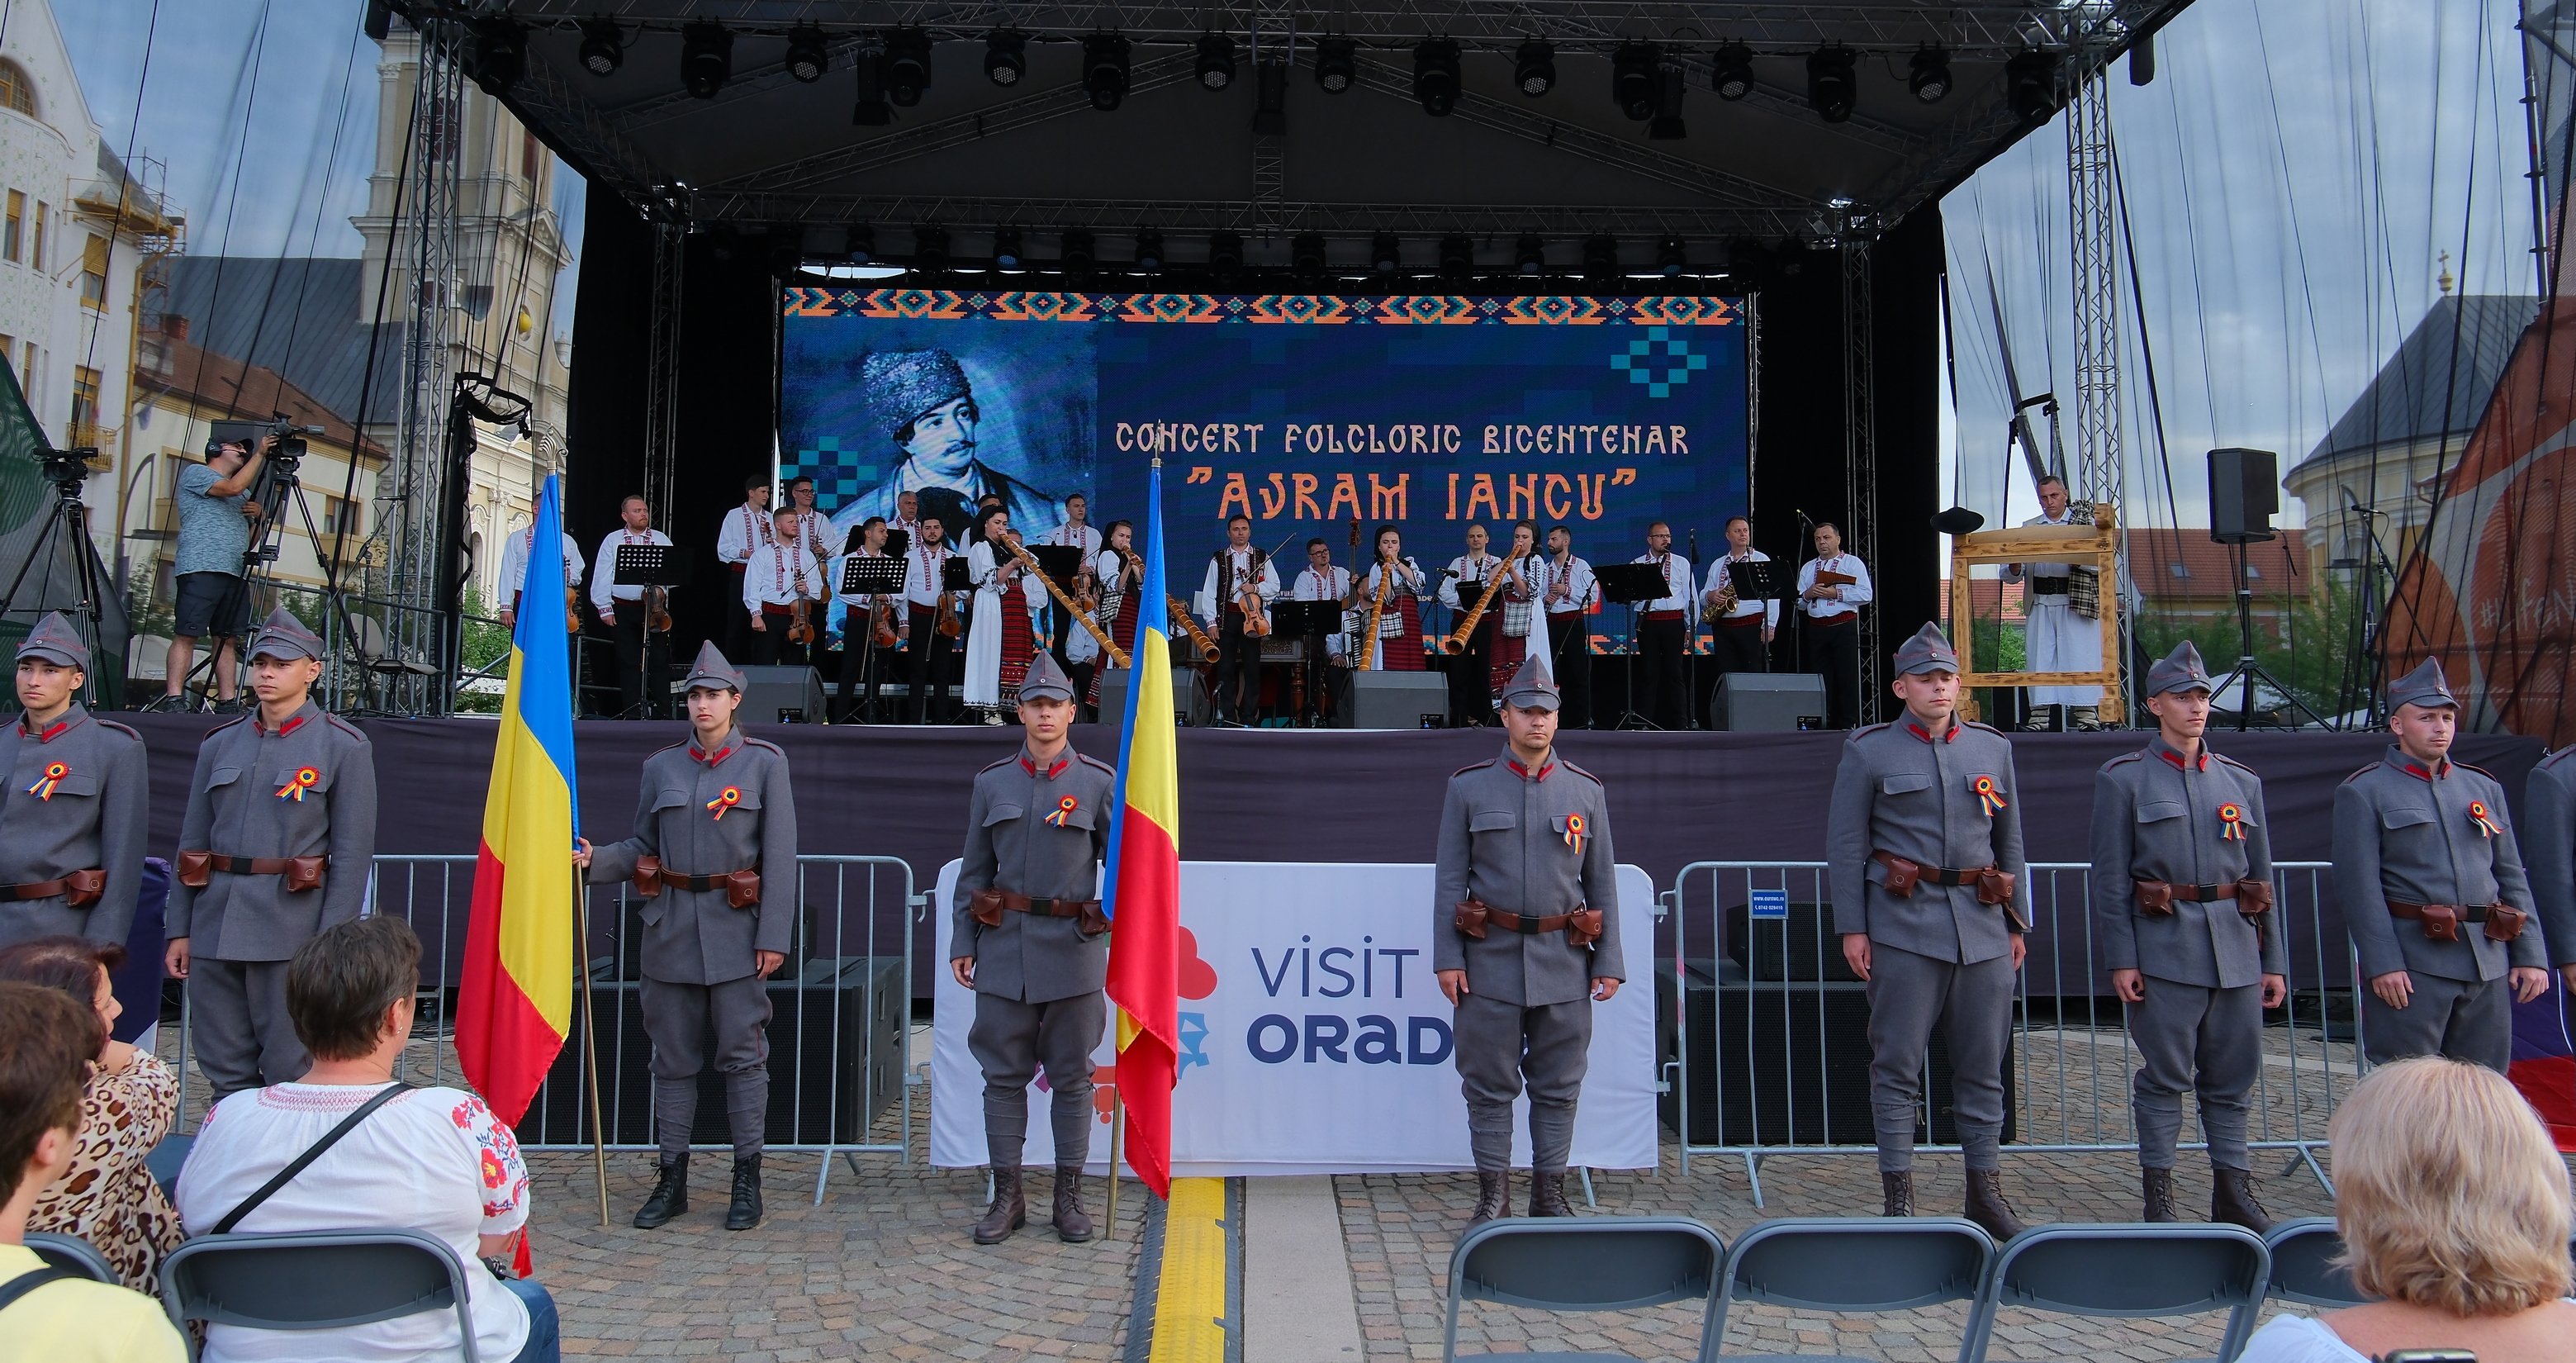 Comemorare Avram Iancu la Oradea (22)